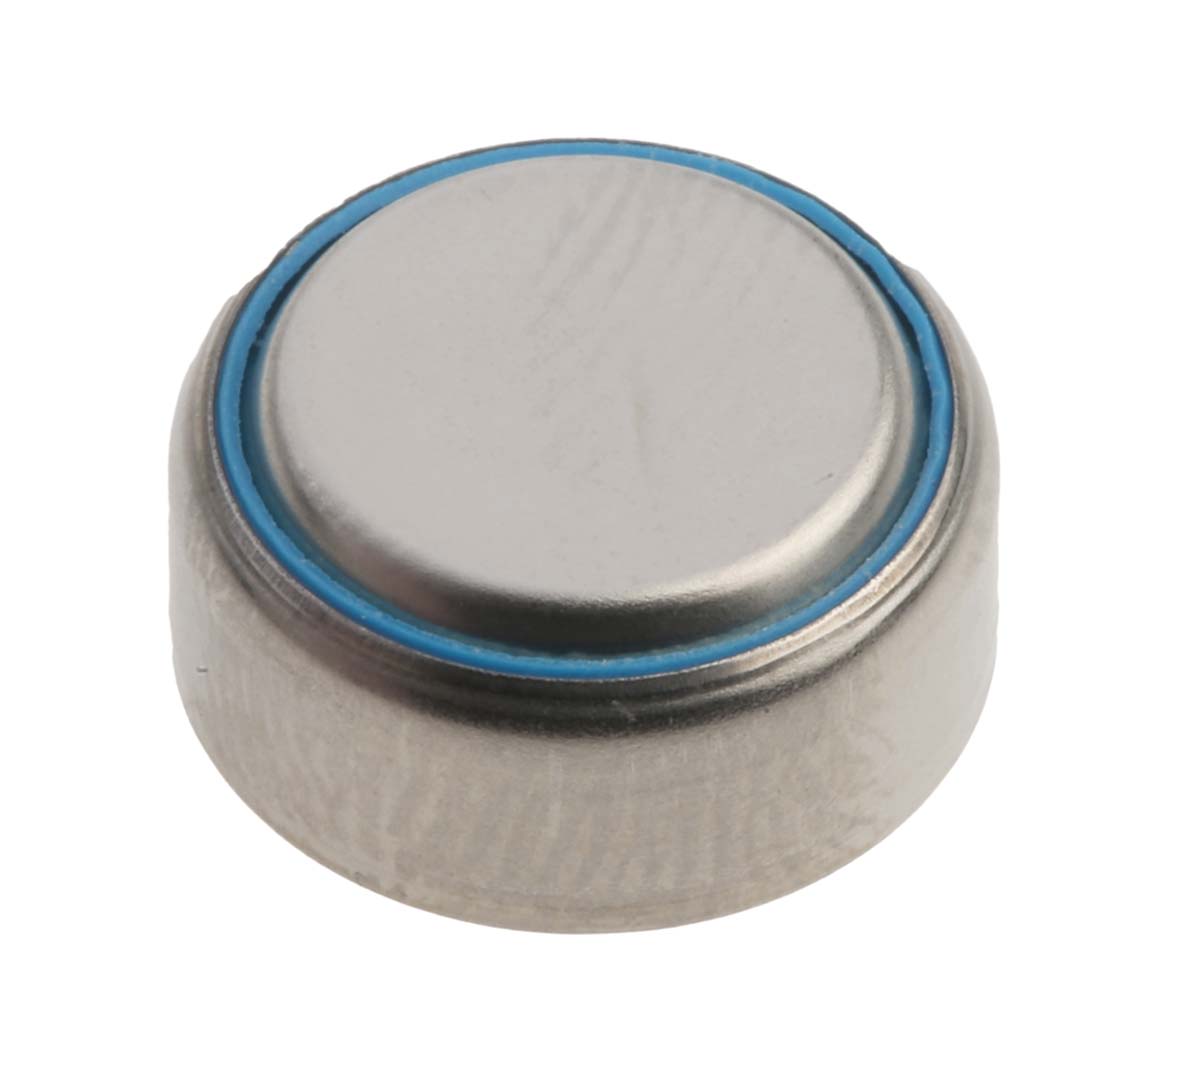 Duracell PR44 Button Battery, 1.4V, 11.6mm Diameter